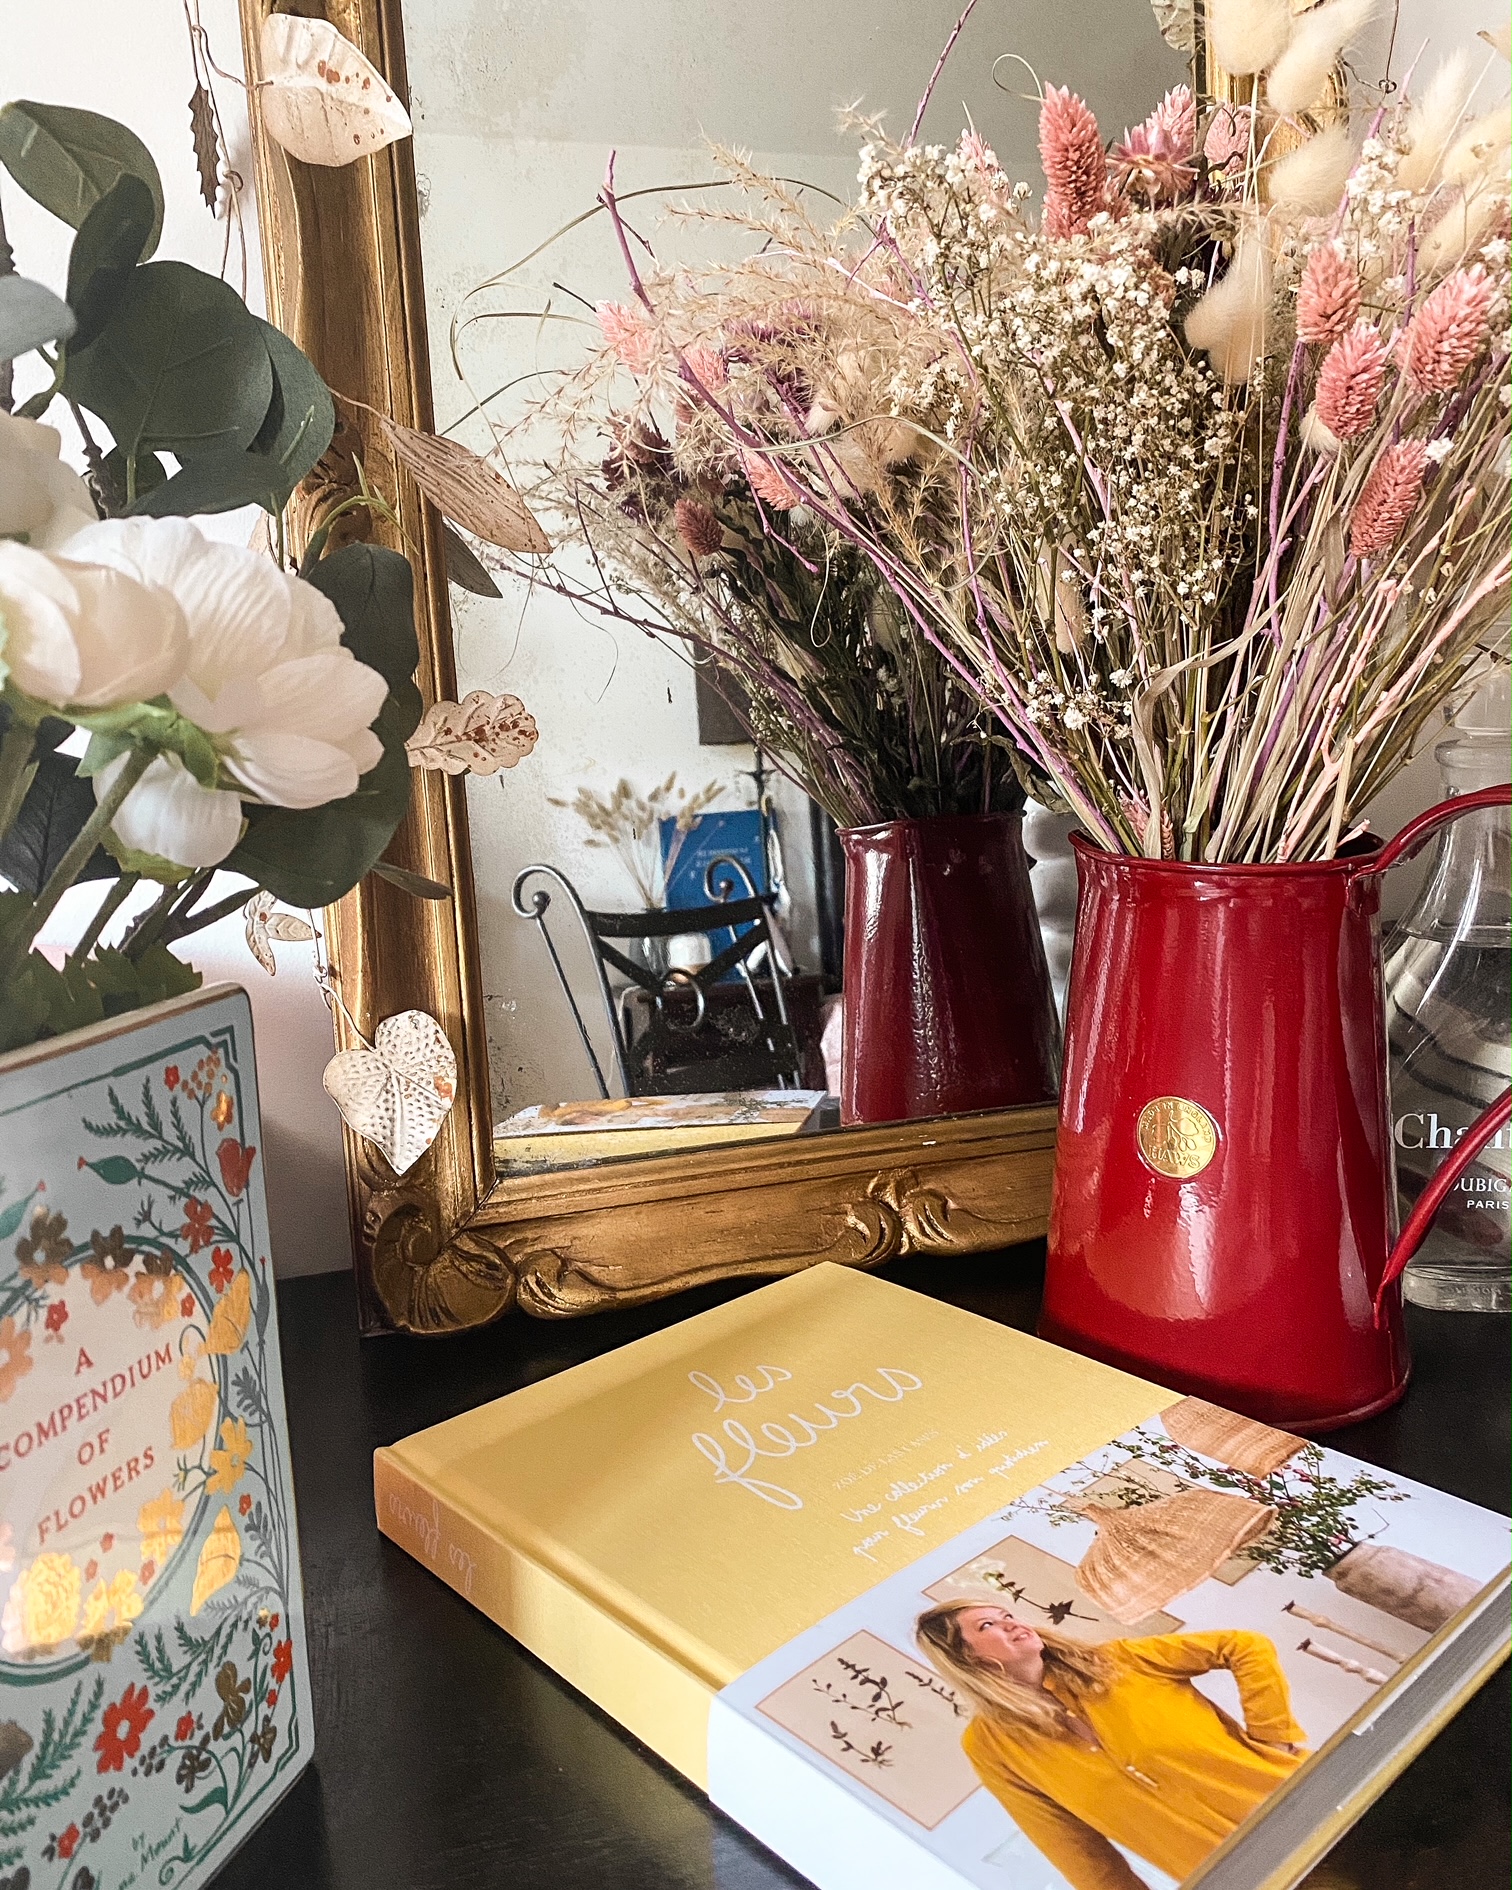 Livre "les fleurs" de Zoé de las cases posé sur une coiffeuse ; un miroir ; un arrosoir rouge avec un bouquet de fleurs séchées ; un vase en forme de livres avec des fleurs blanches et de l'eucalyptus